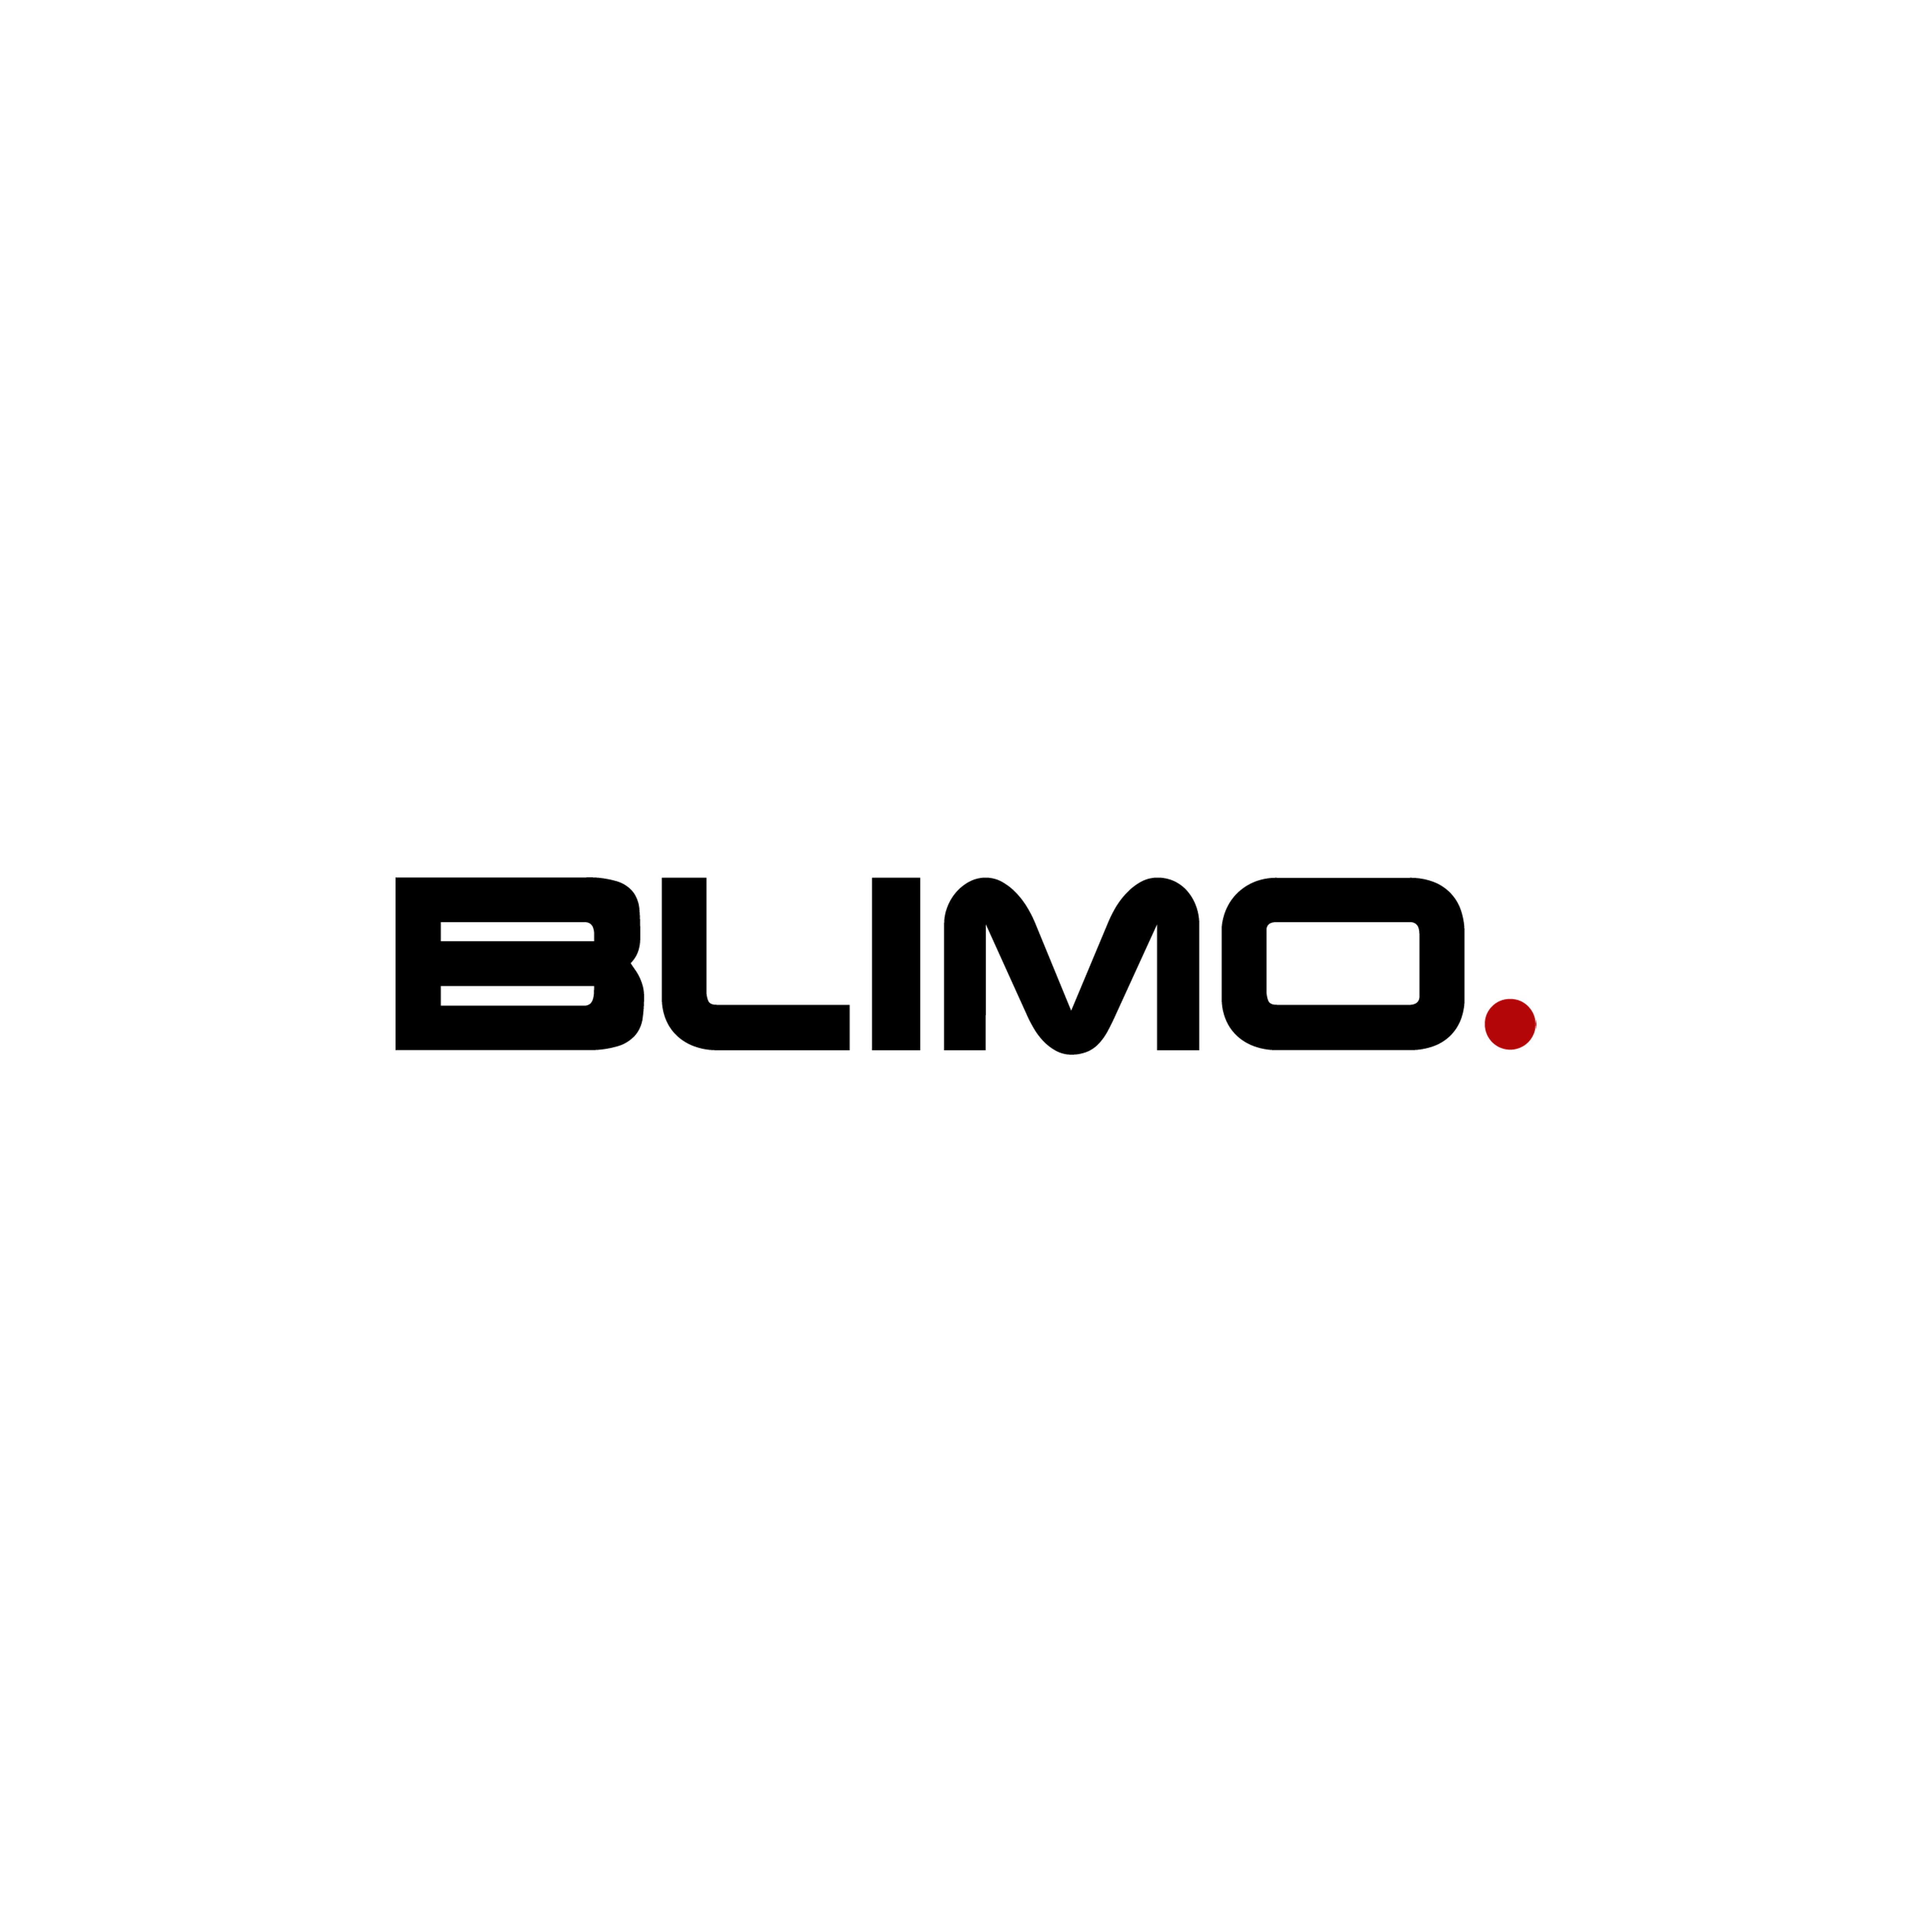 Transaxel 400 W Blimo Moto 2015 framåt - utan motor